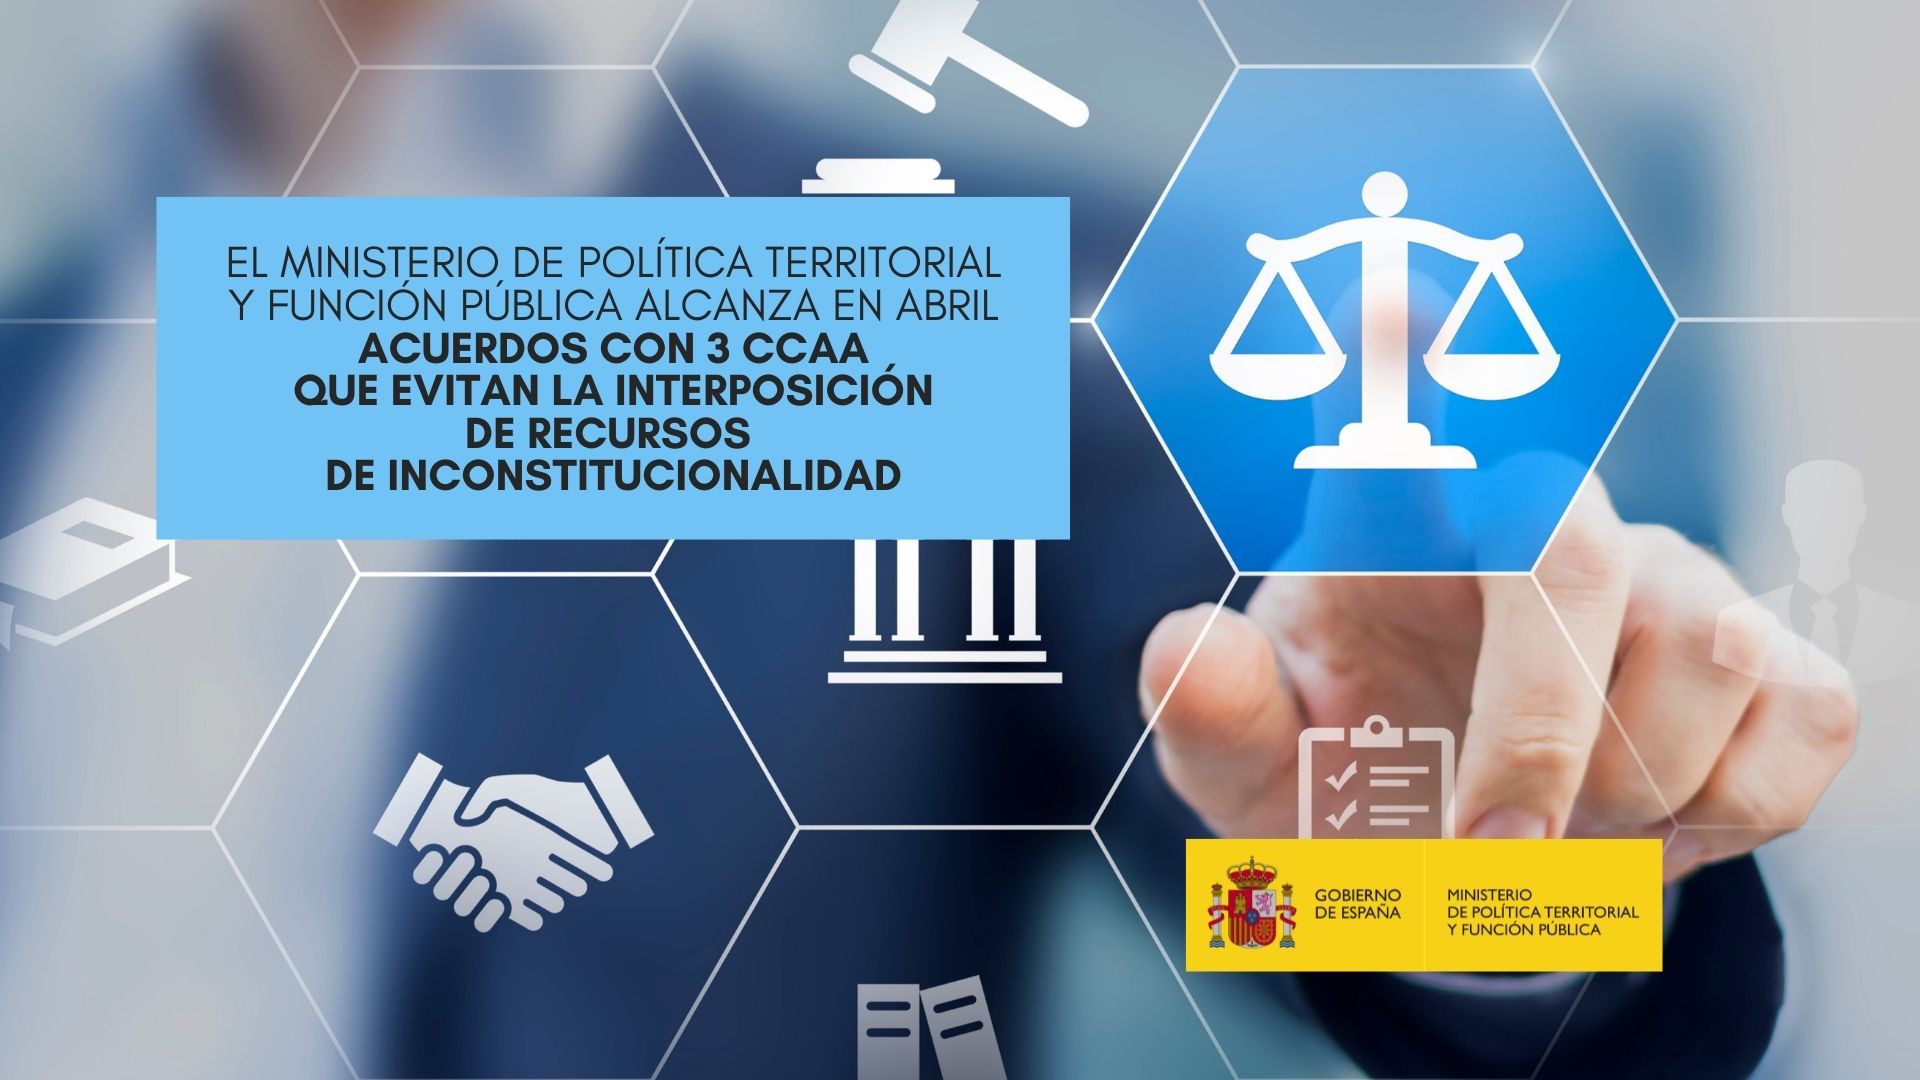 El Ministerio de Política Territorial y Función Pública alcanza en abril acuerdos con tres CCAA que evitan la interposición de recursos de inconstitucionalidad 